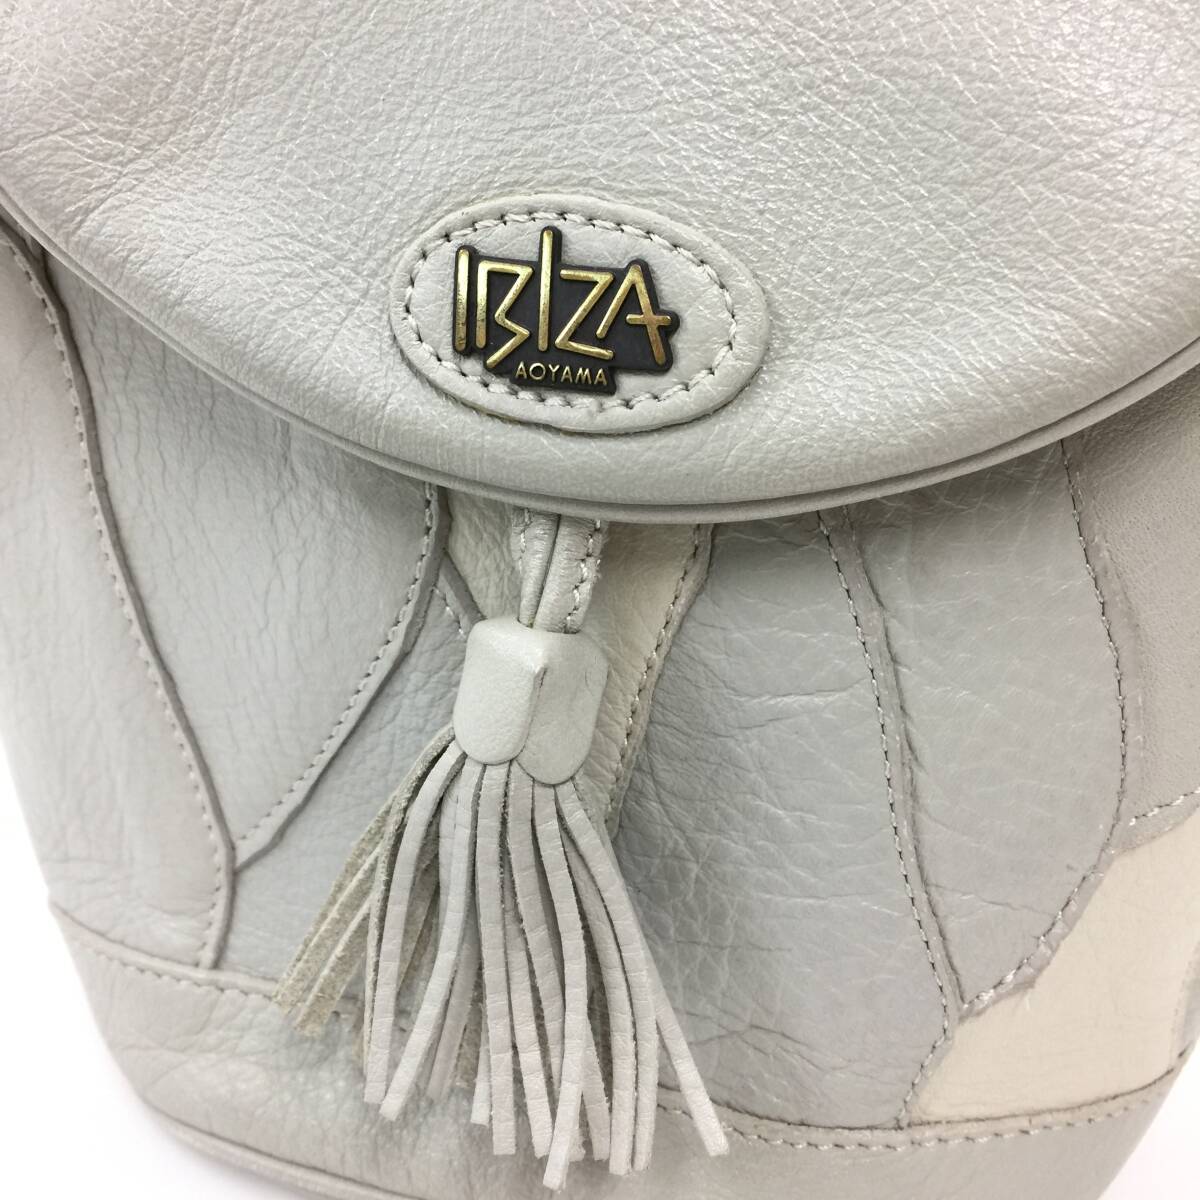 112 IBIZA イビザ レザー ショルダーバッグ ポシェット タッセル 縦型 本革 皮革 鞄 バッグ かばん レディース ライトグレー系の画像5